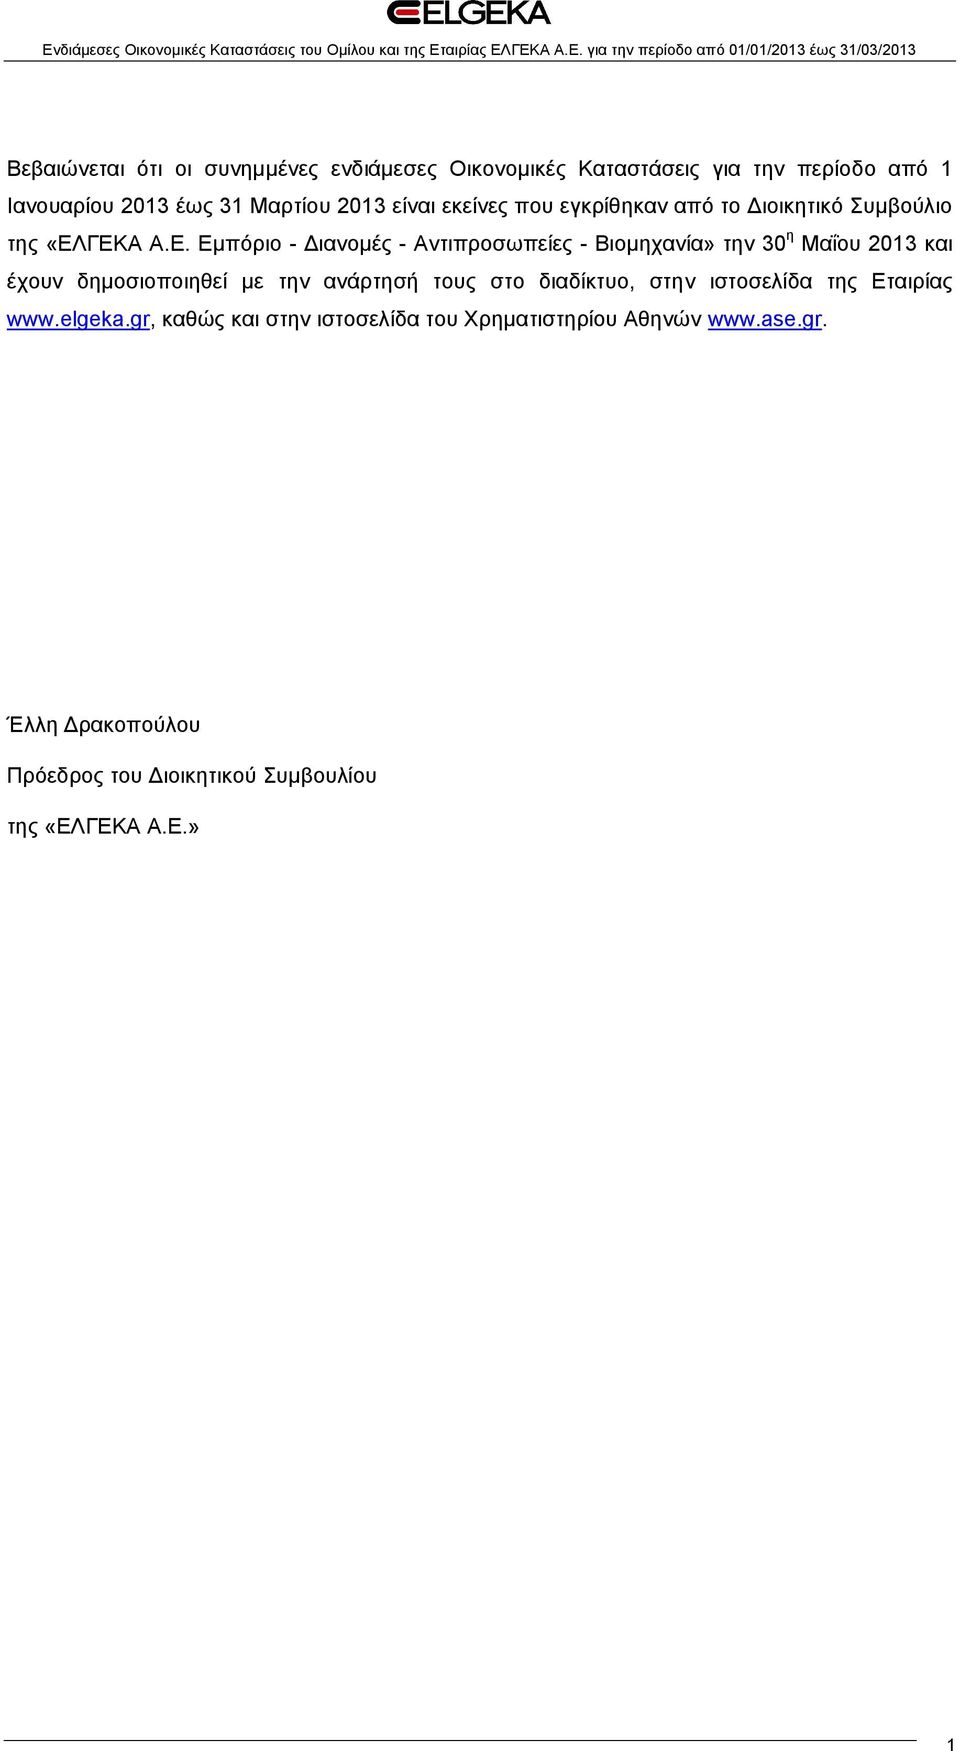 ΓΕΚΑ Α.Ε. Εμπόριο - Διανομές - Αντιπροσωπείες - Βιομηχανία» την 30 η Μαΐου 2013 και έχουν δημοσιοποιηθεί με την ανάρτησή τους